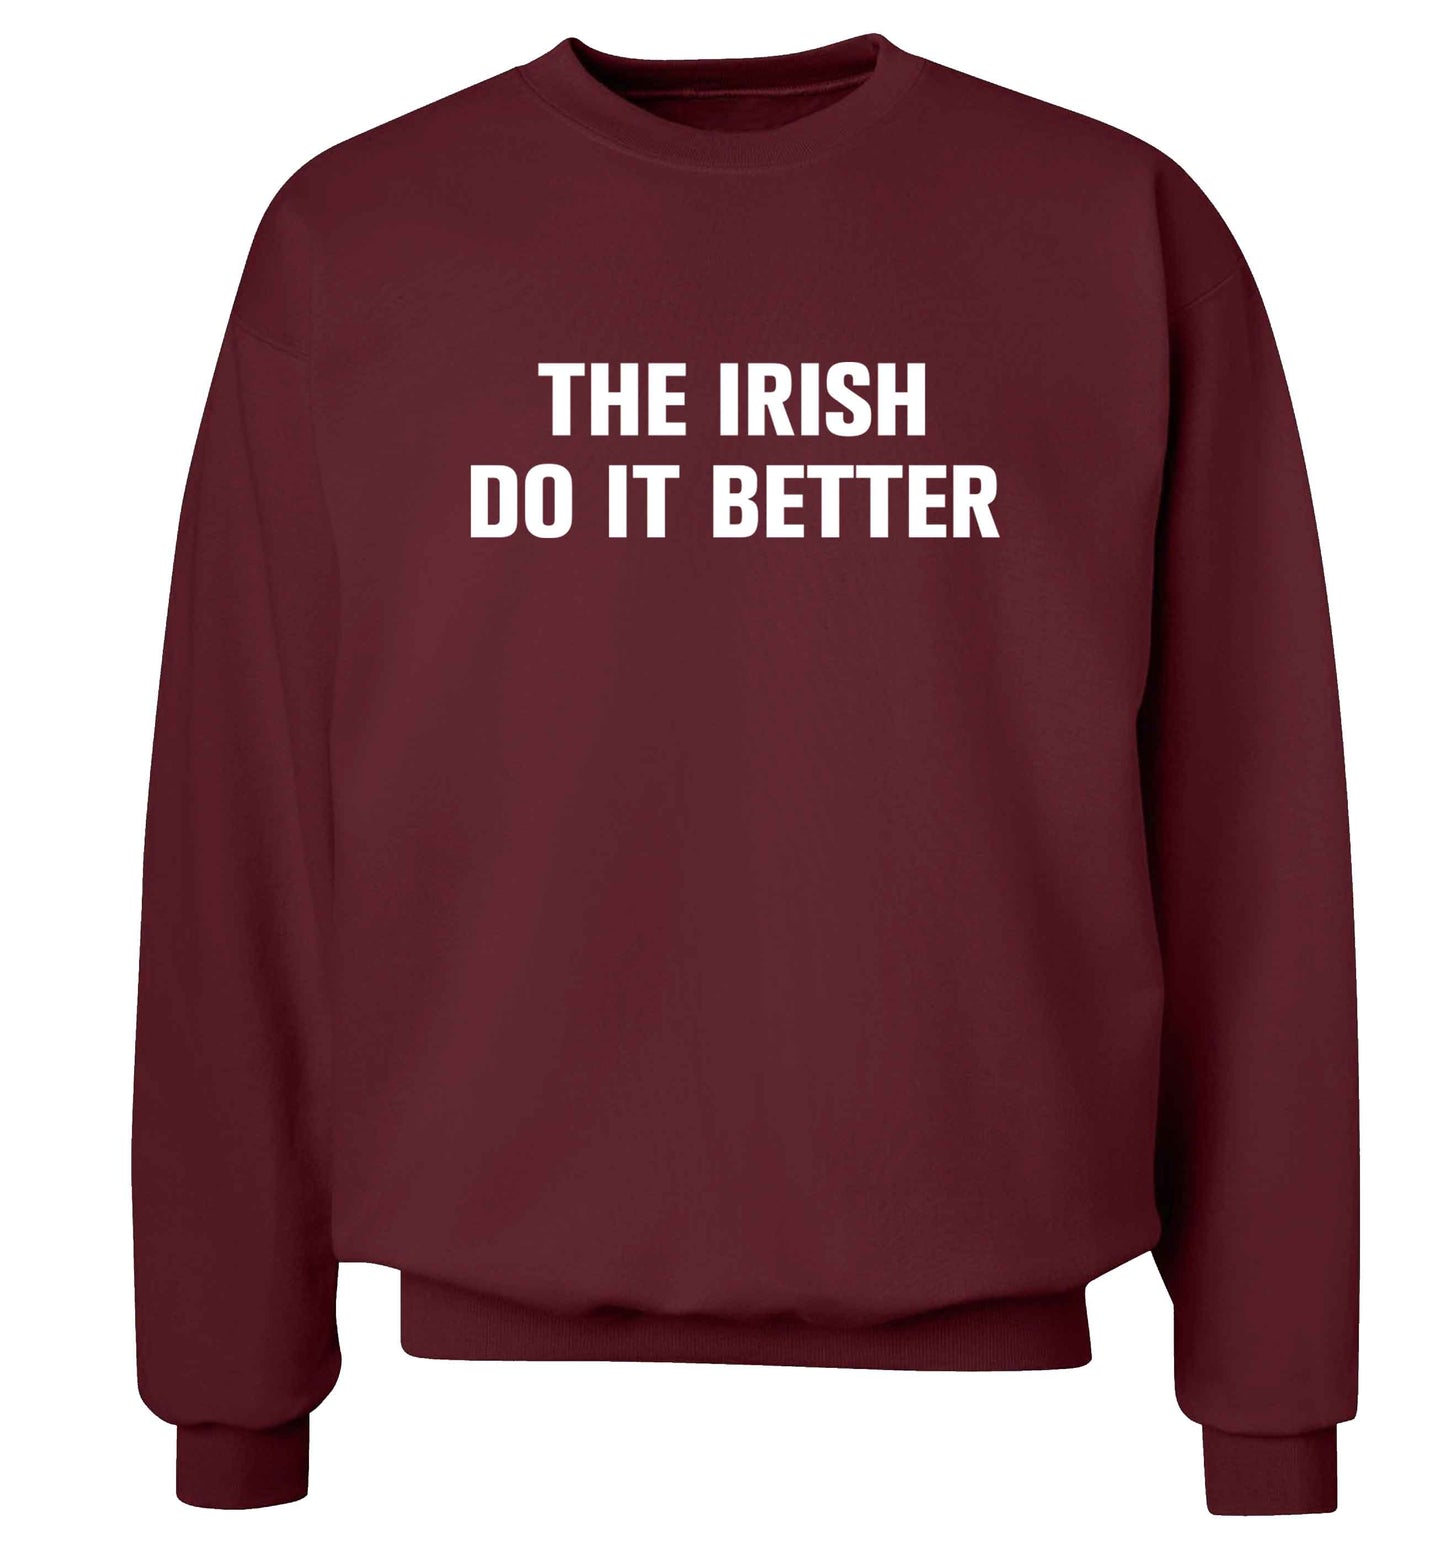 The Irish do it better adult's unisex maroon sweater 2XL